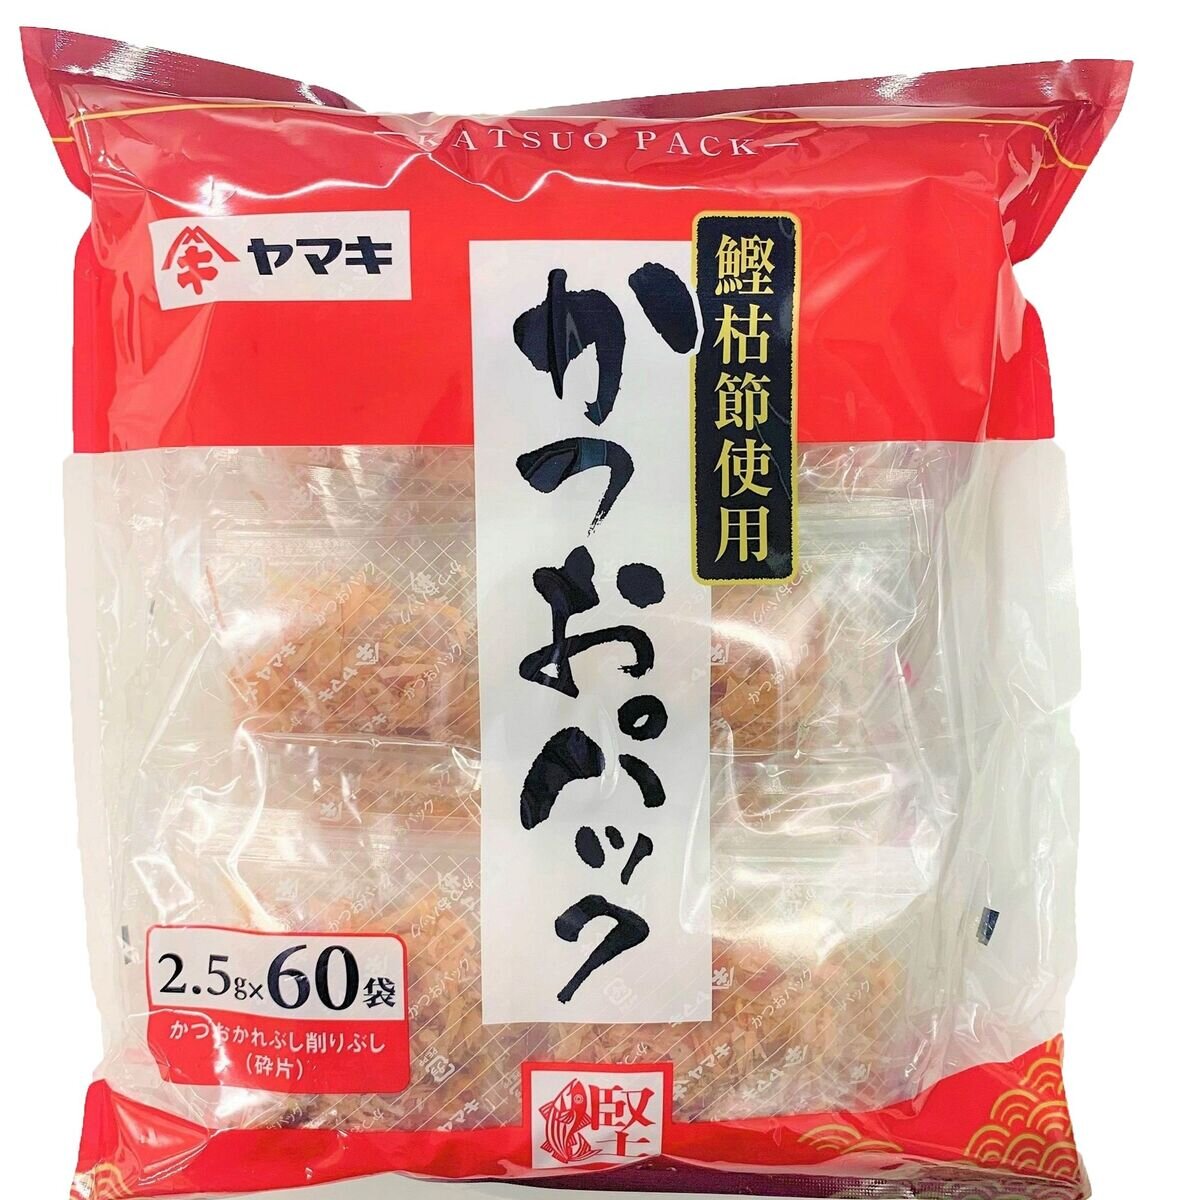 ヤマキ かつおパック 2.5g x 60袋 | Costco Japan